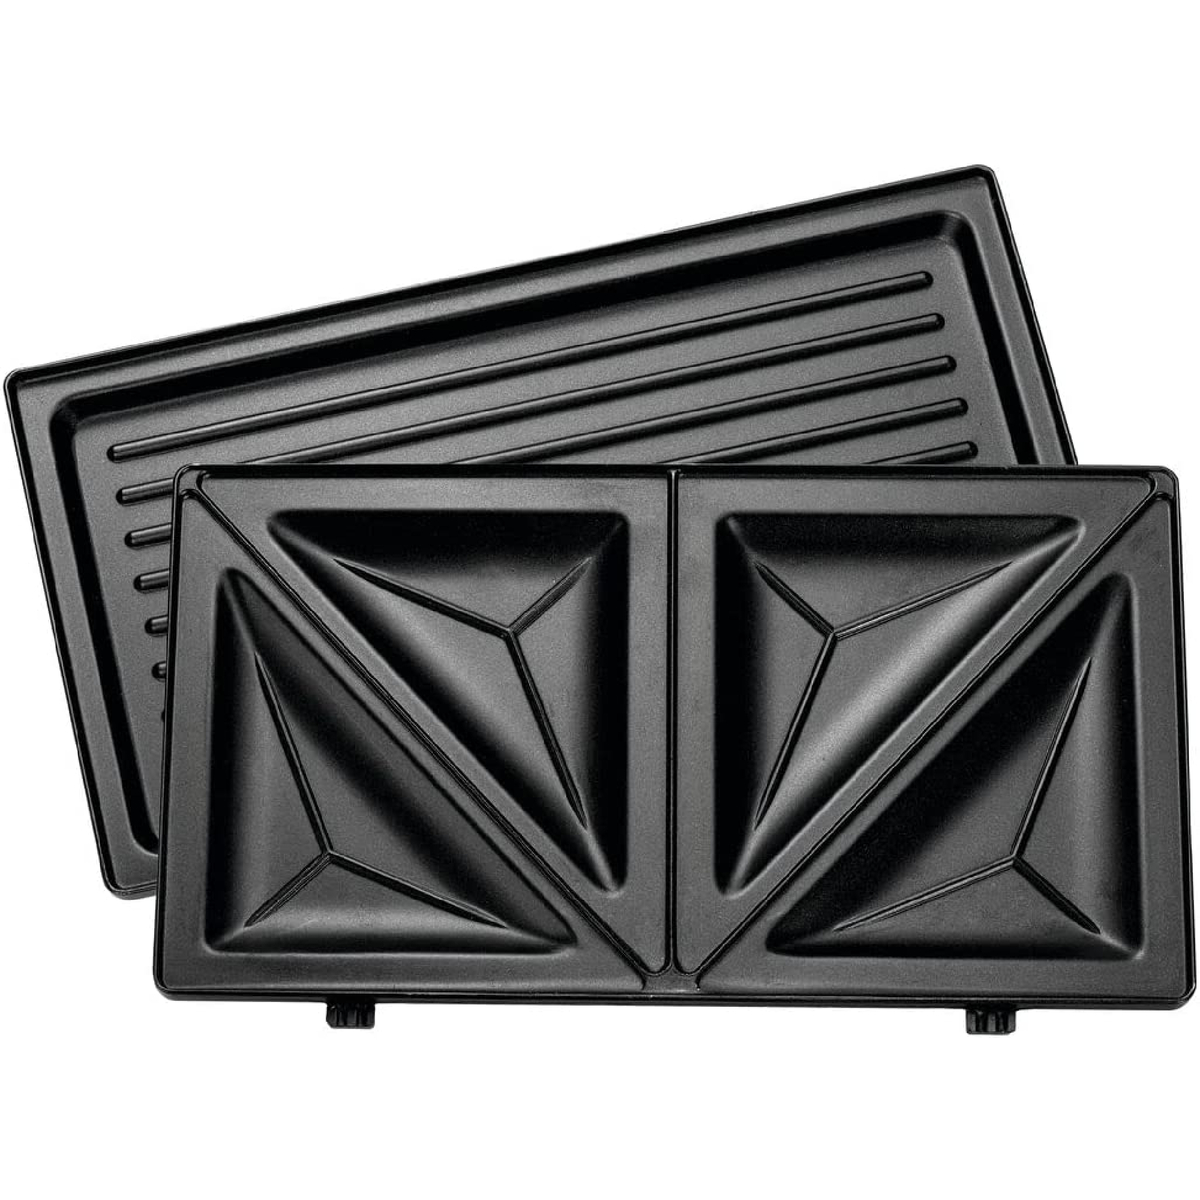 Black + Decker 2 in 1 SandwichMaker, 780 W, Black, TS2120-B5